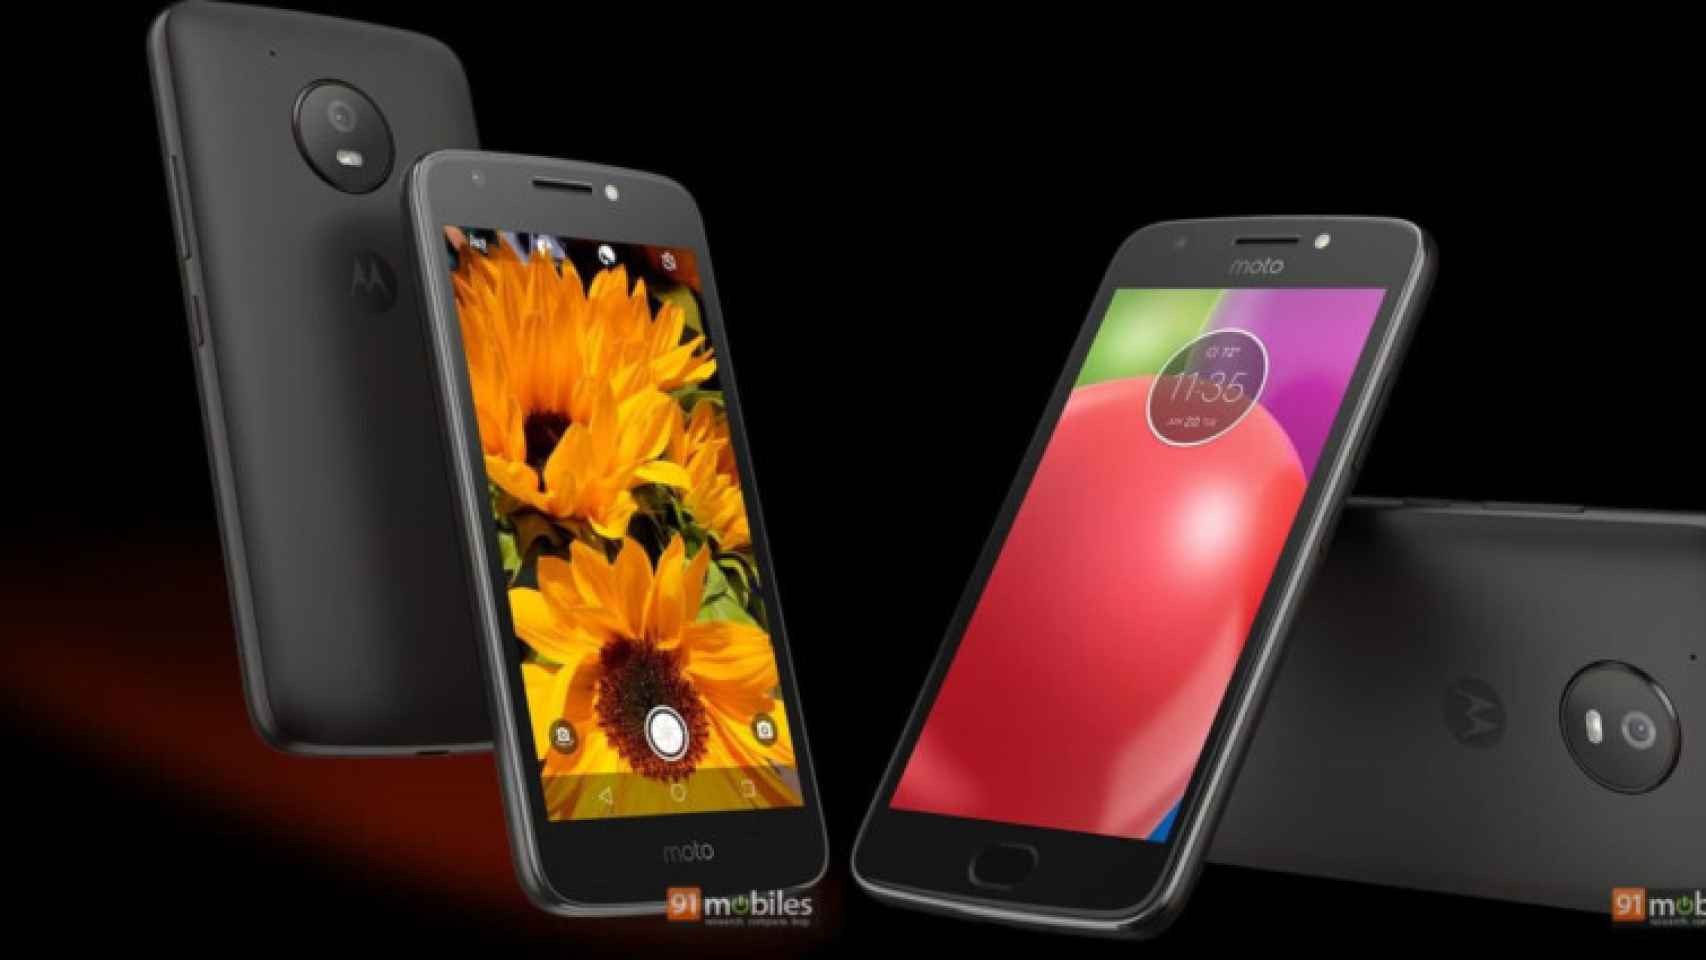 Los nuevos móviles ultrabaratos de Motorola aparecen filtrados en nuevas imágenes